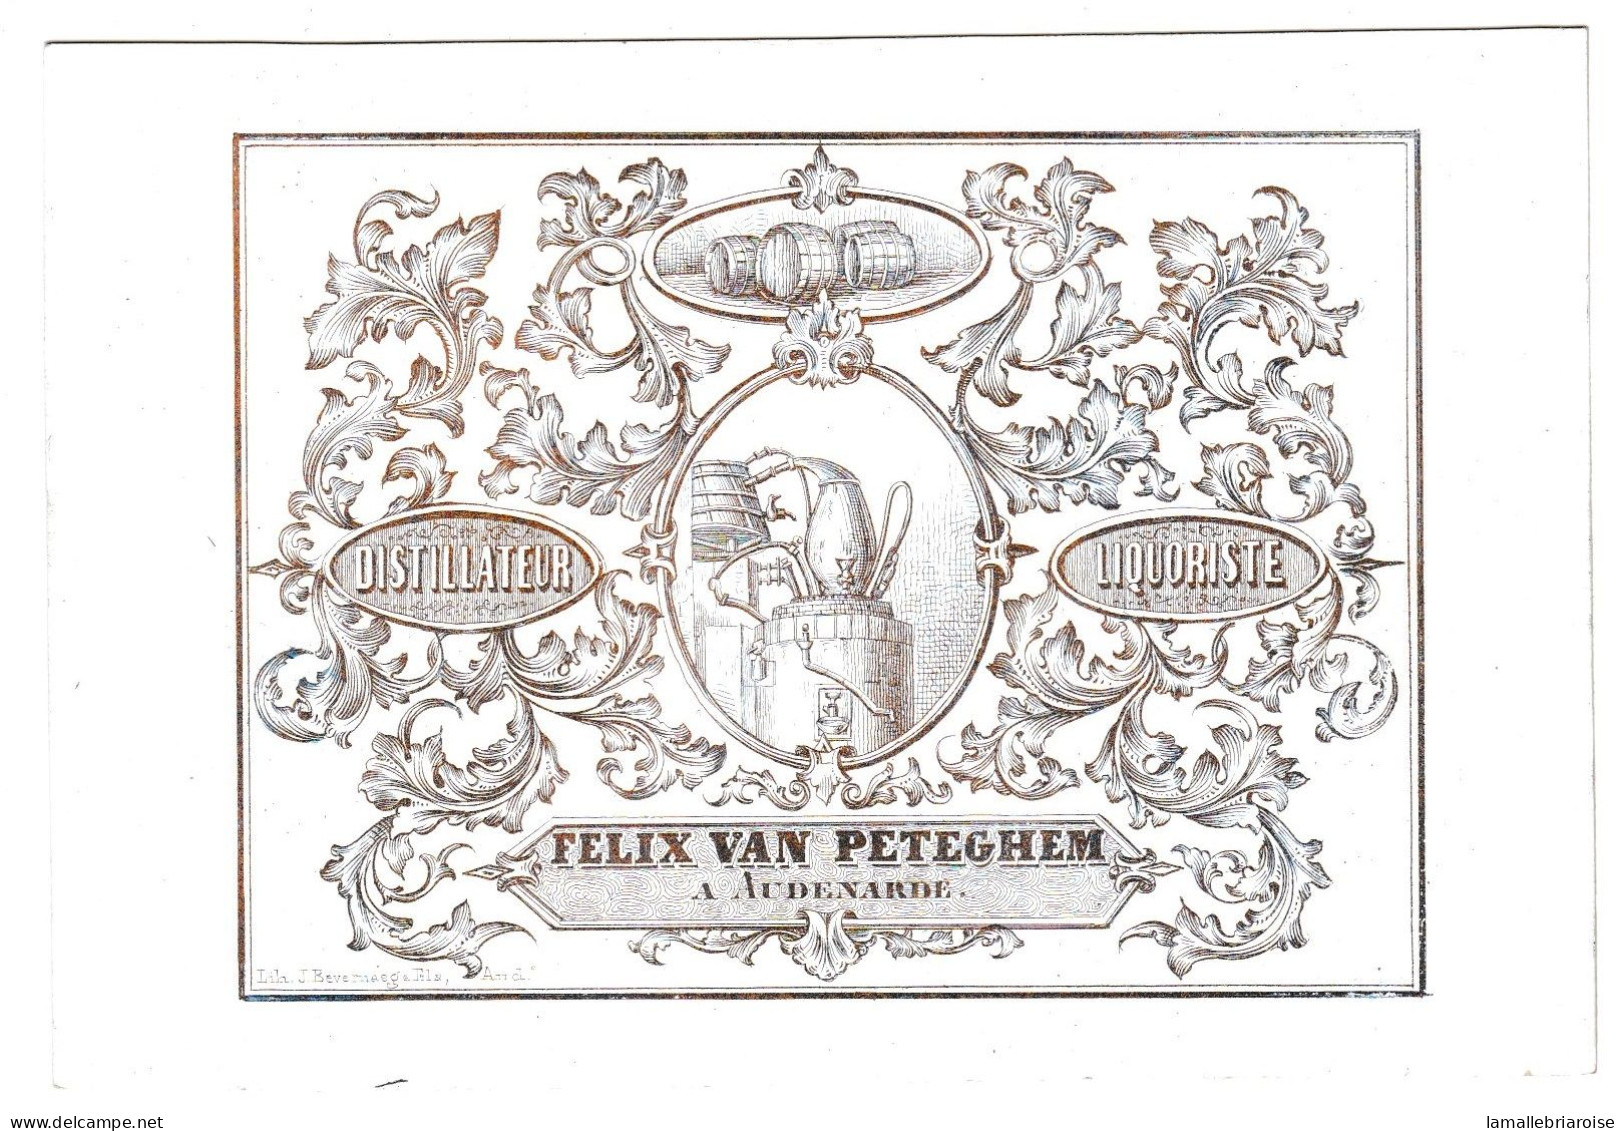 Belgique, "Carte Porcelaine" Porseleinkaart, Felix Van Peteghem, Distillateur Liquoriste, Audenaerde, 130x89mm - Porzellan